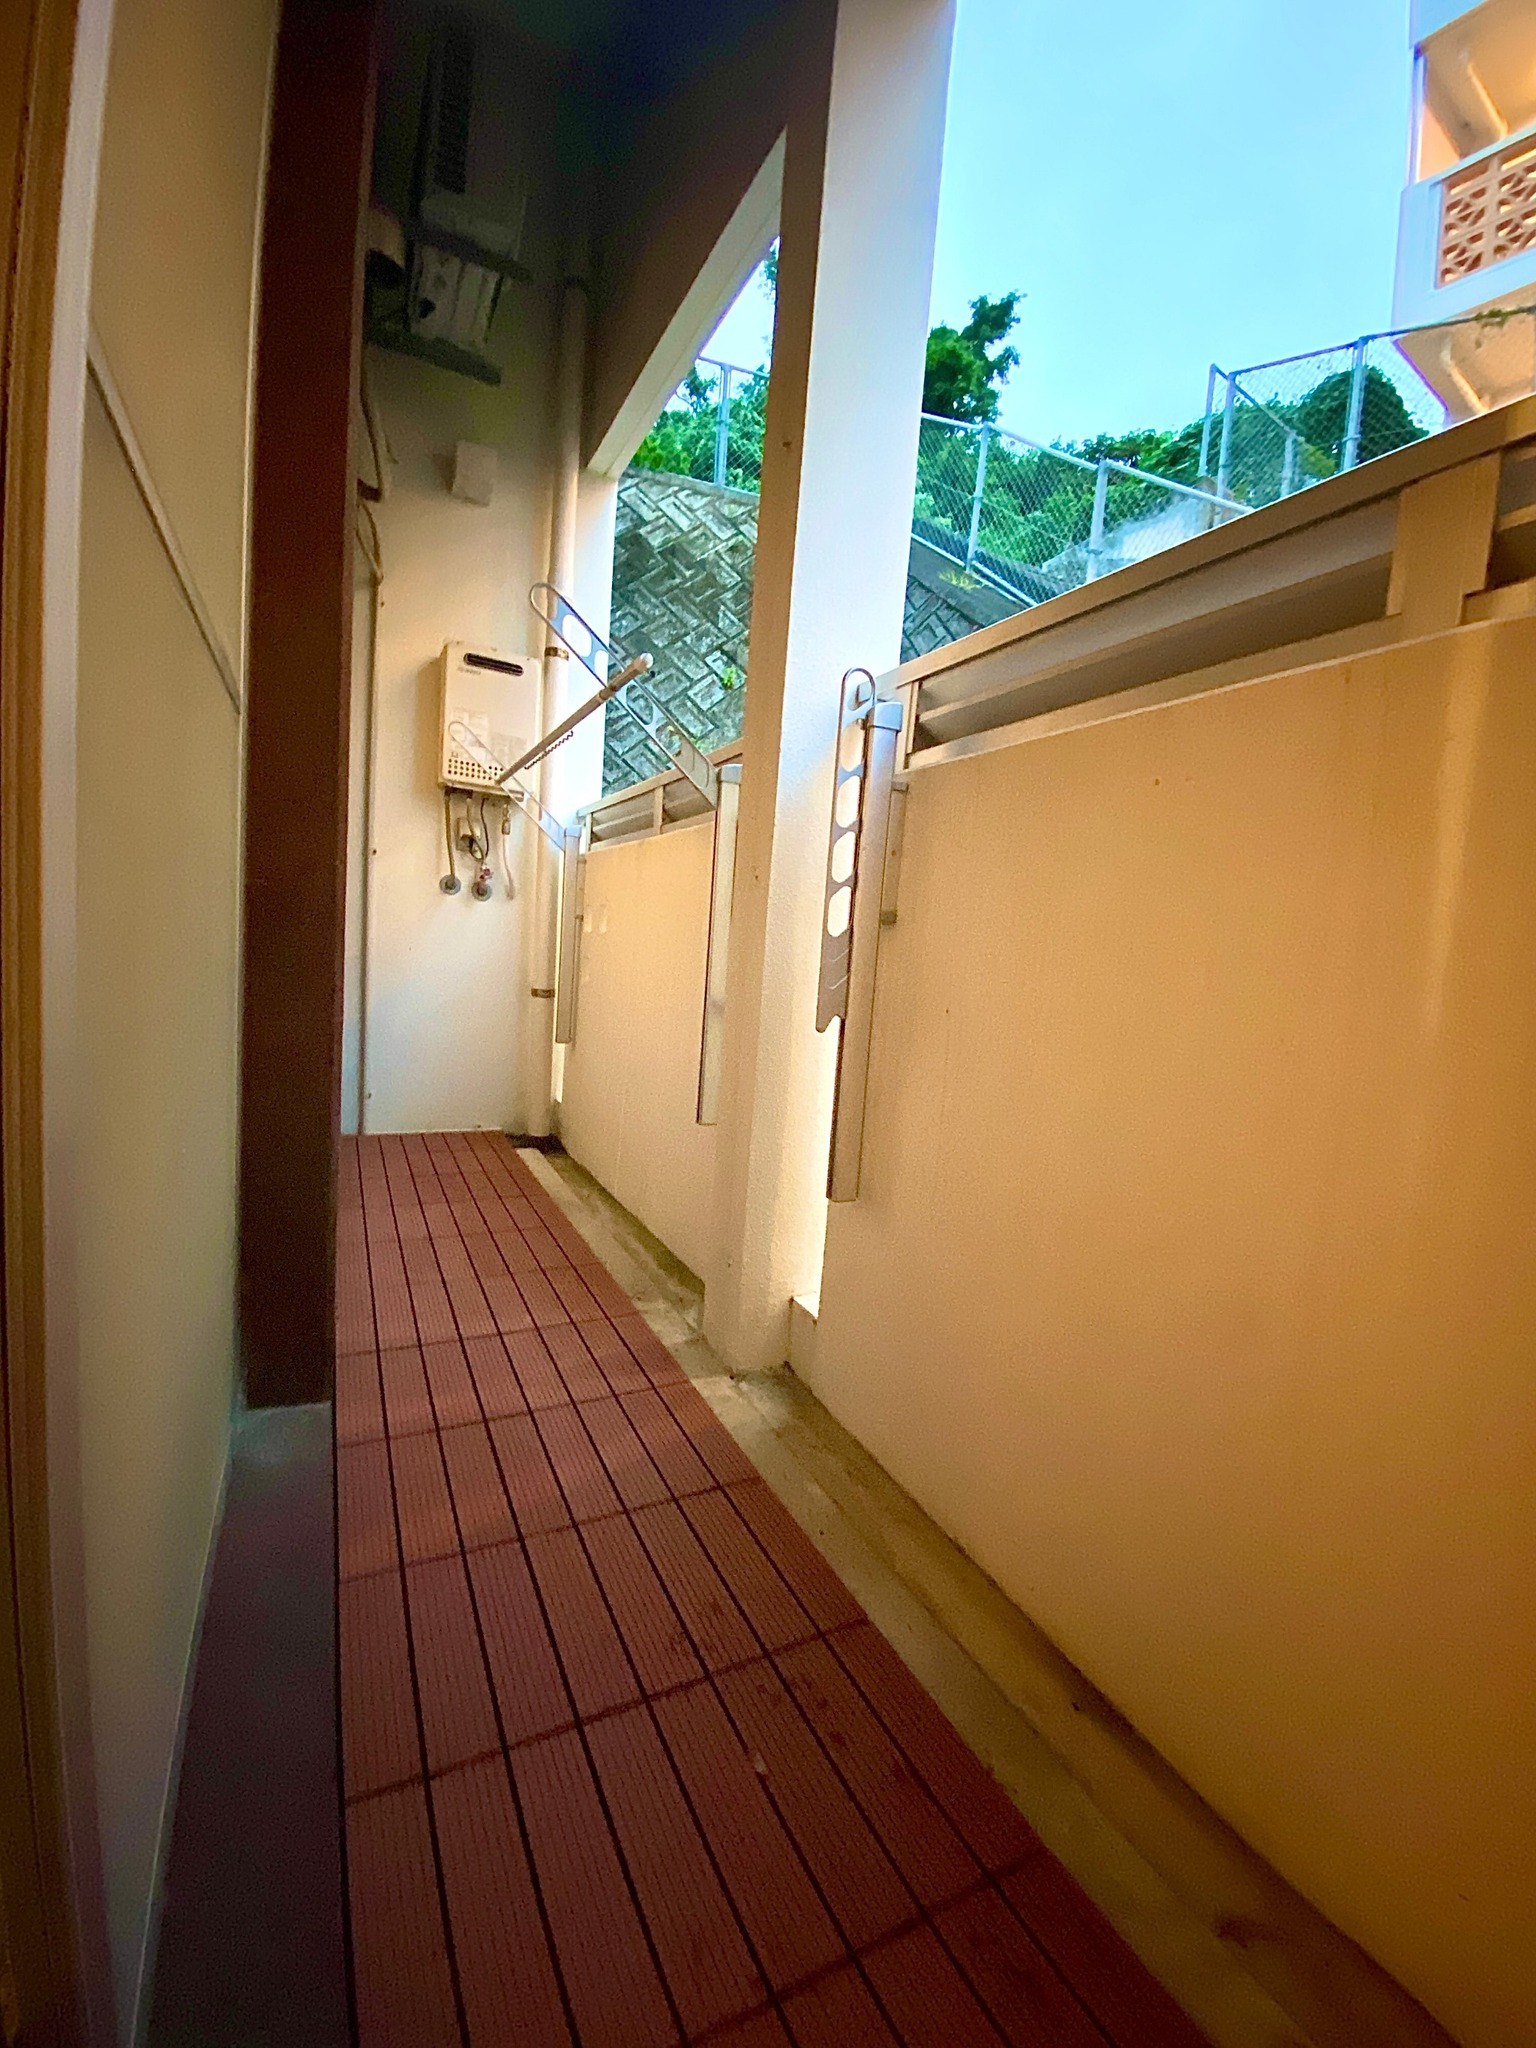 10名まで宿泊OK!壺川駅から徒歩約10分!こだわりのアパートメントホテル!